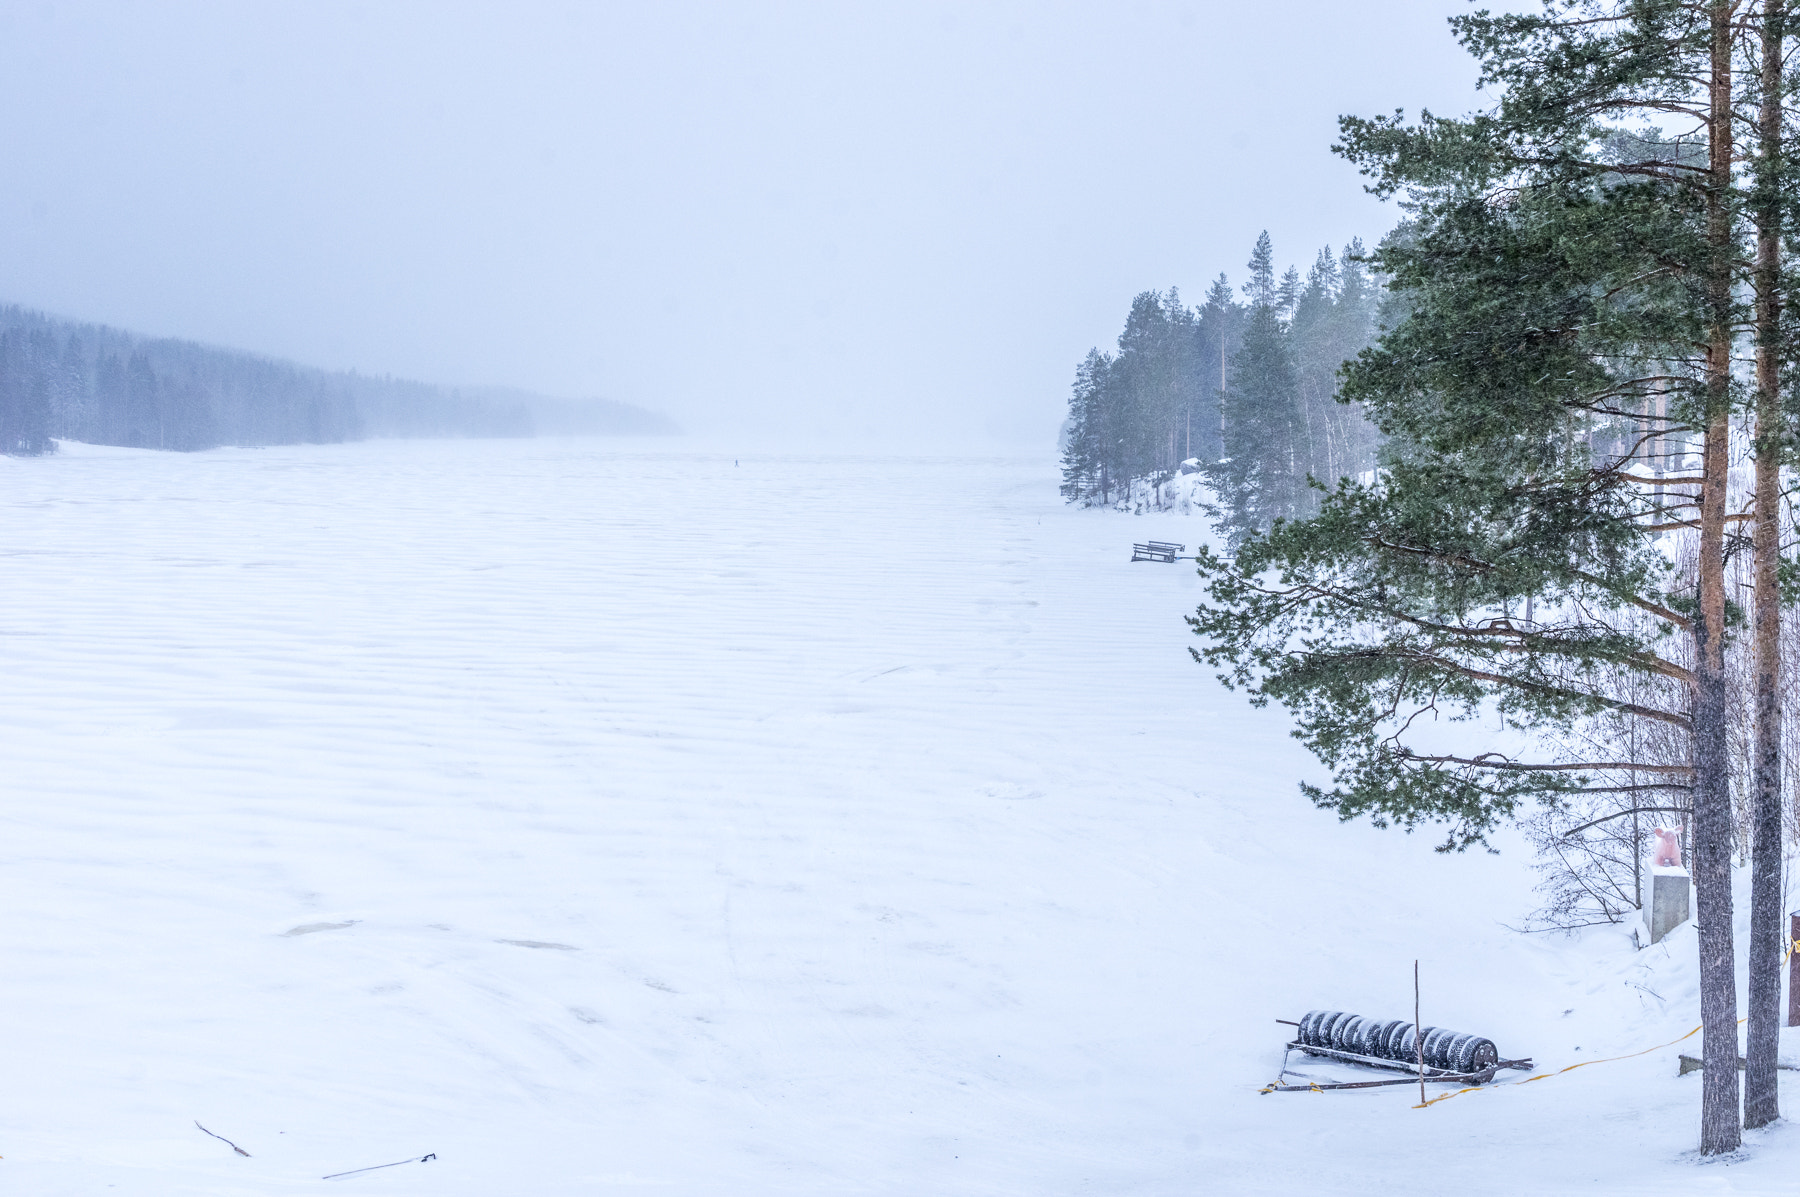 Pentax smc FA 31mm F1.8 AL Limited sample photo. Suomi winter #3 photography